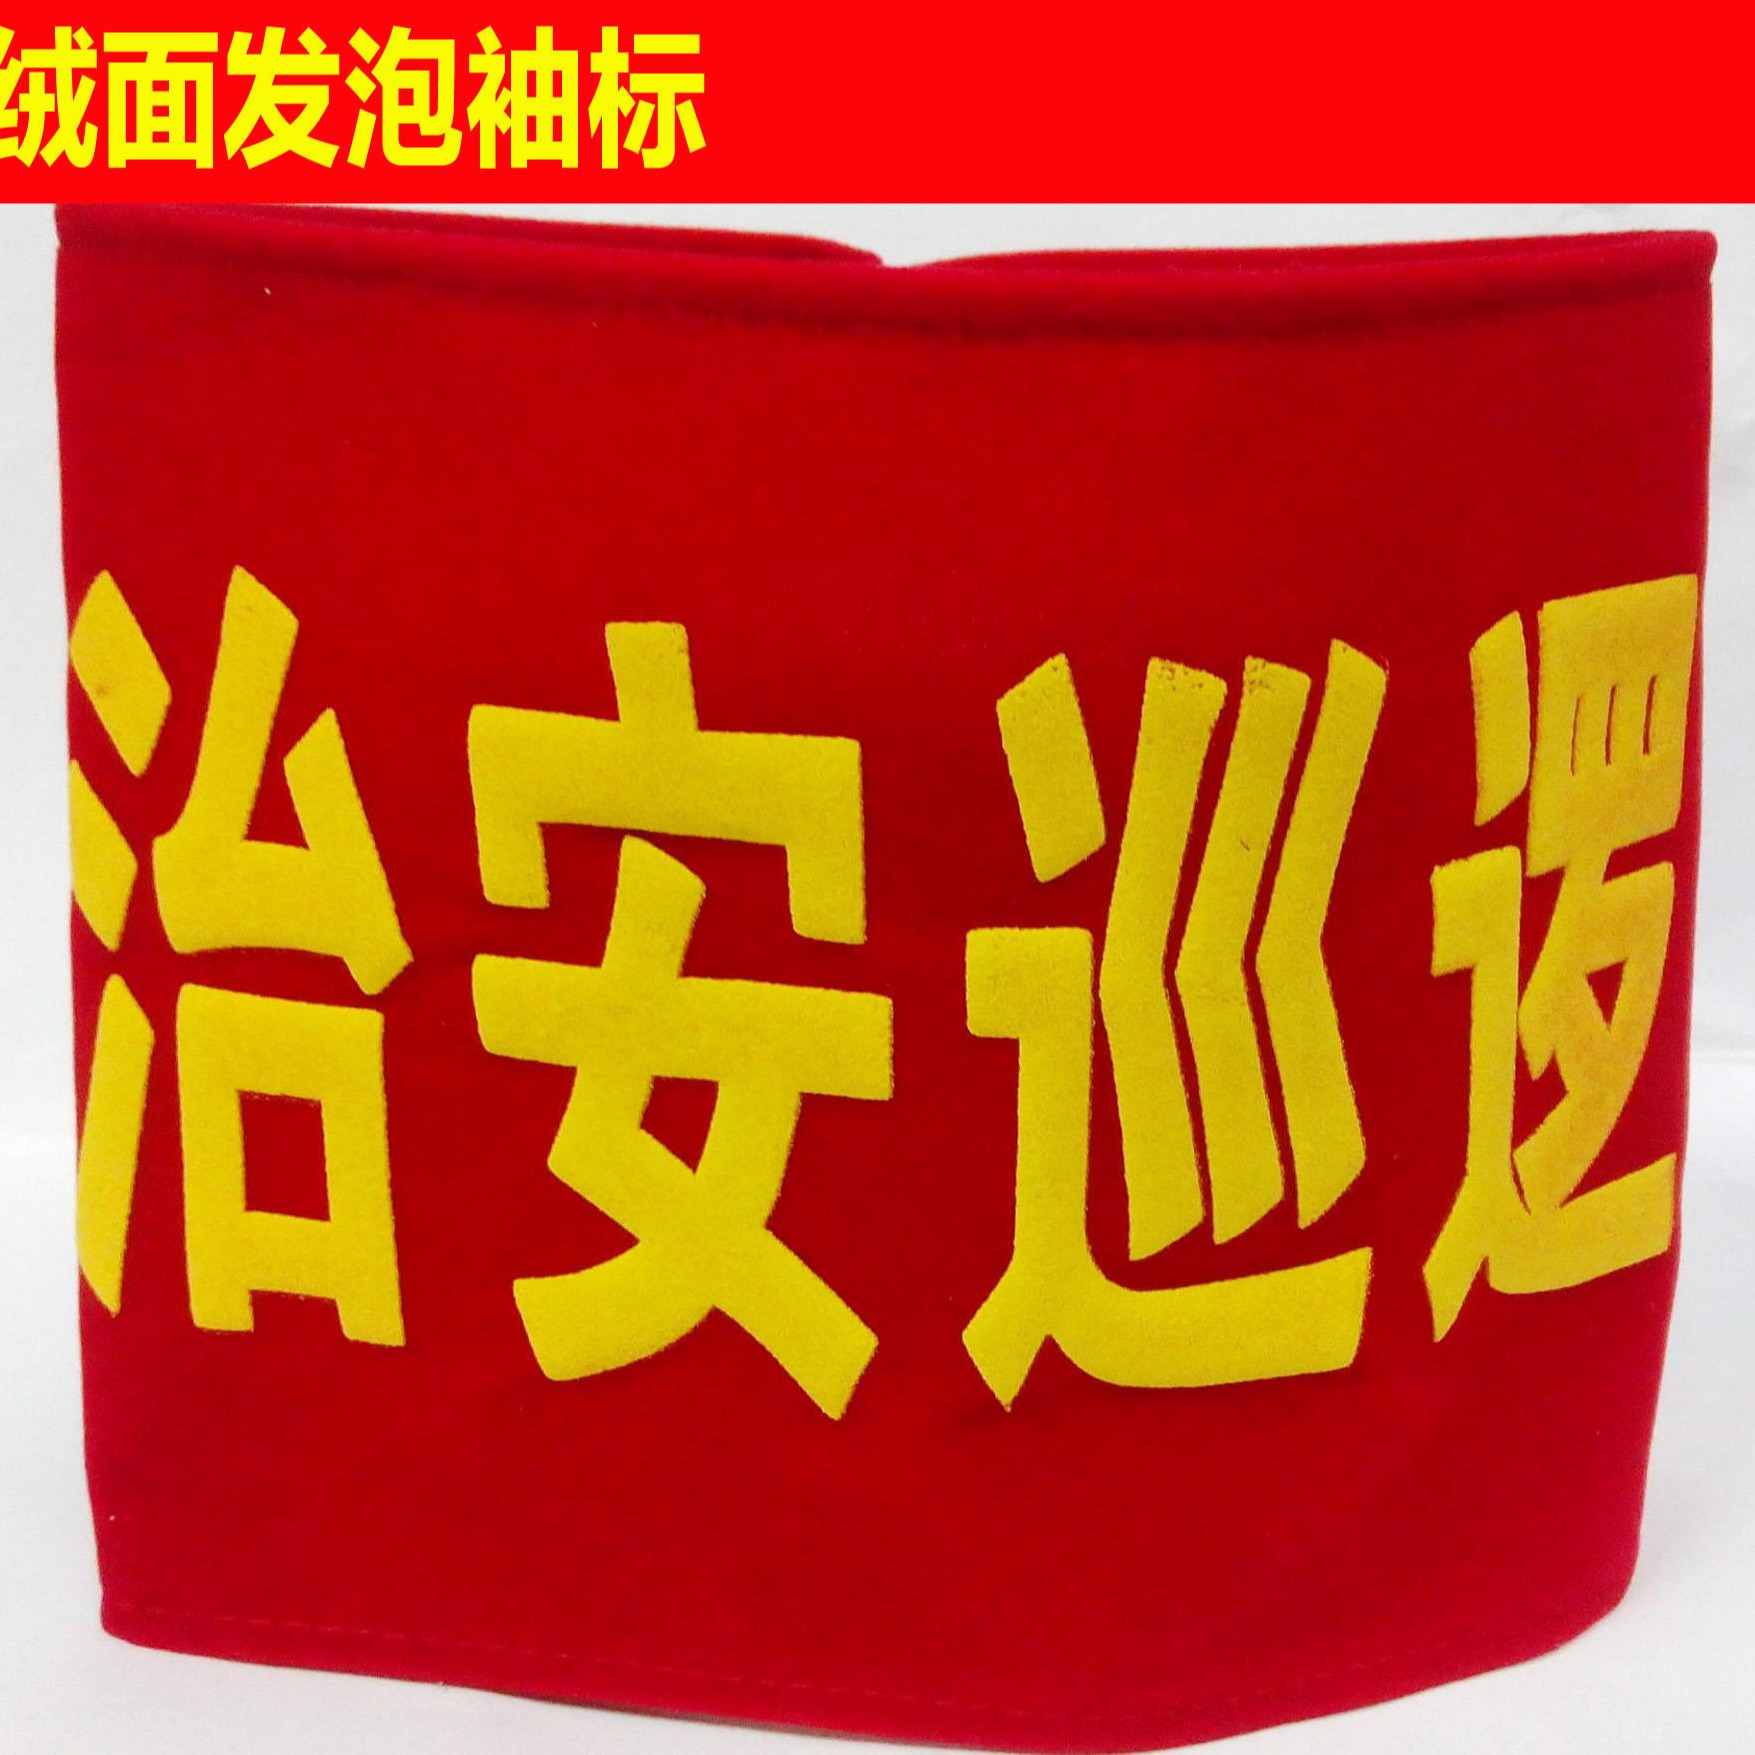 昆明春城志愿者袖标定制红袖章定做管理员执勤安全员红袖标队长订做图片